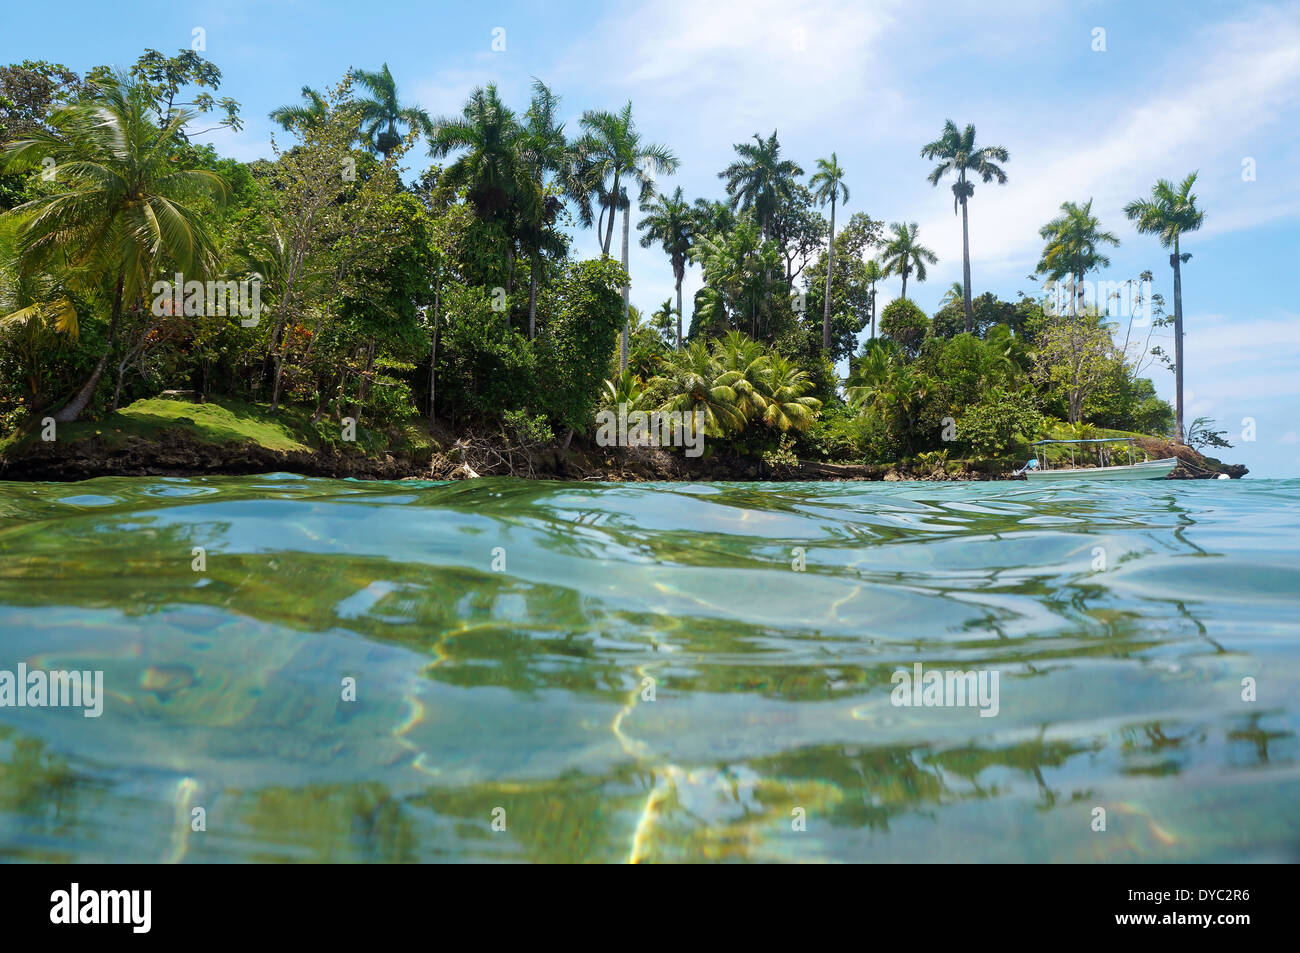 Isla tropical con vegetación exuberante y un barco en la boya de amarre, visto desde la superficie del agua del mar Caribe, Panamá Foto de stock